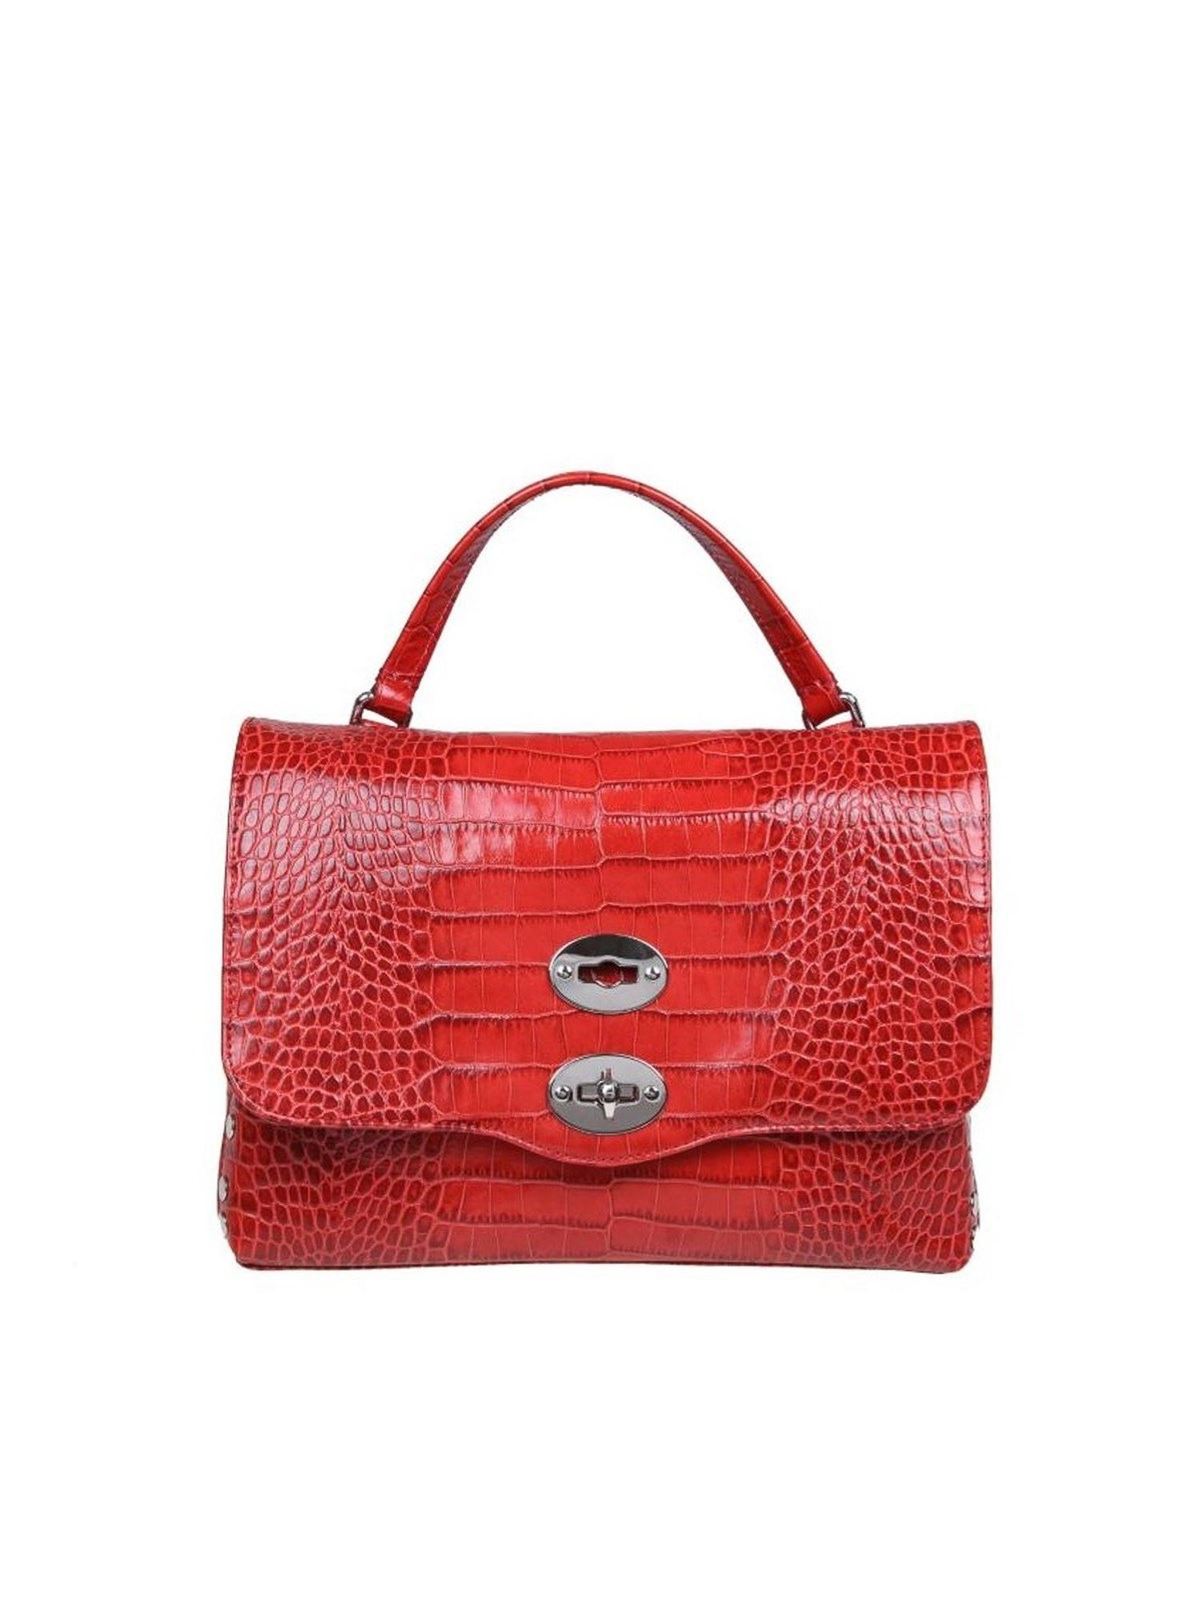 Totes bags Zanellato - Postina Baby Ritratto bag in red